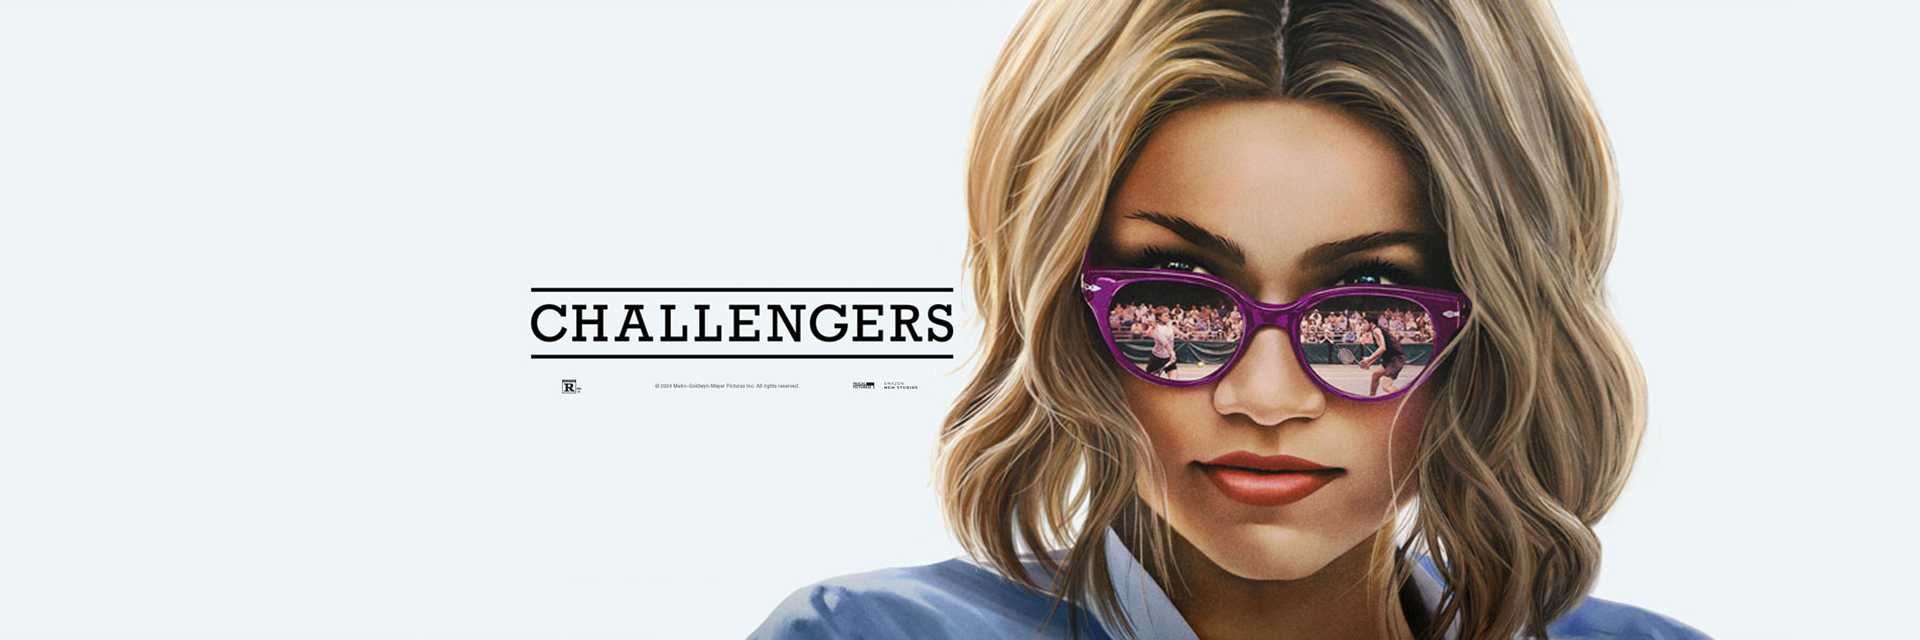 CHALLENGERS movie Zendaya in sunglasses